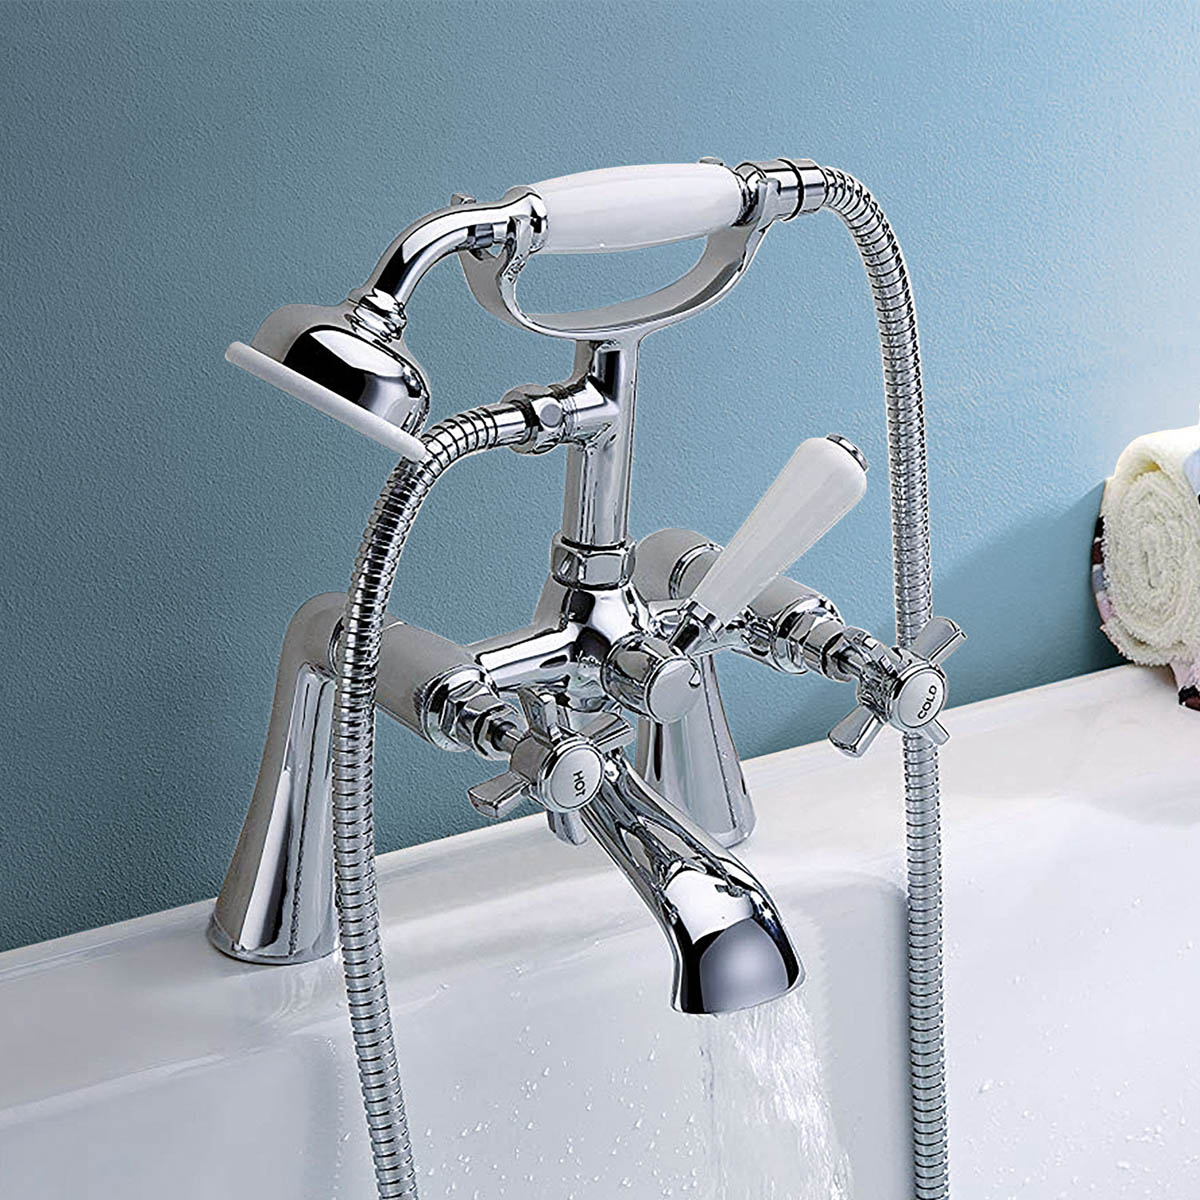 Trisen Wisley Bath Shower Mixer With Shower Kit